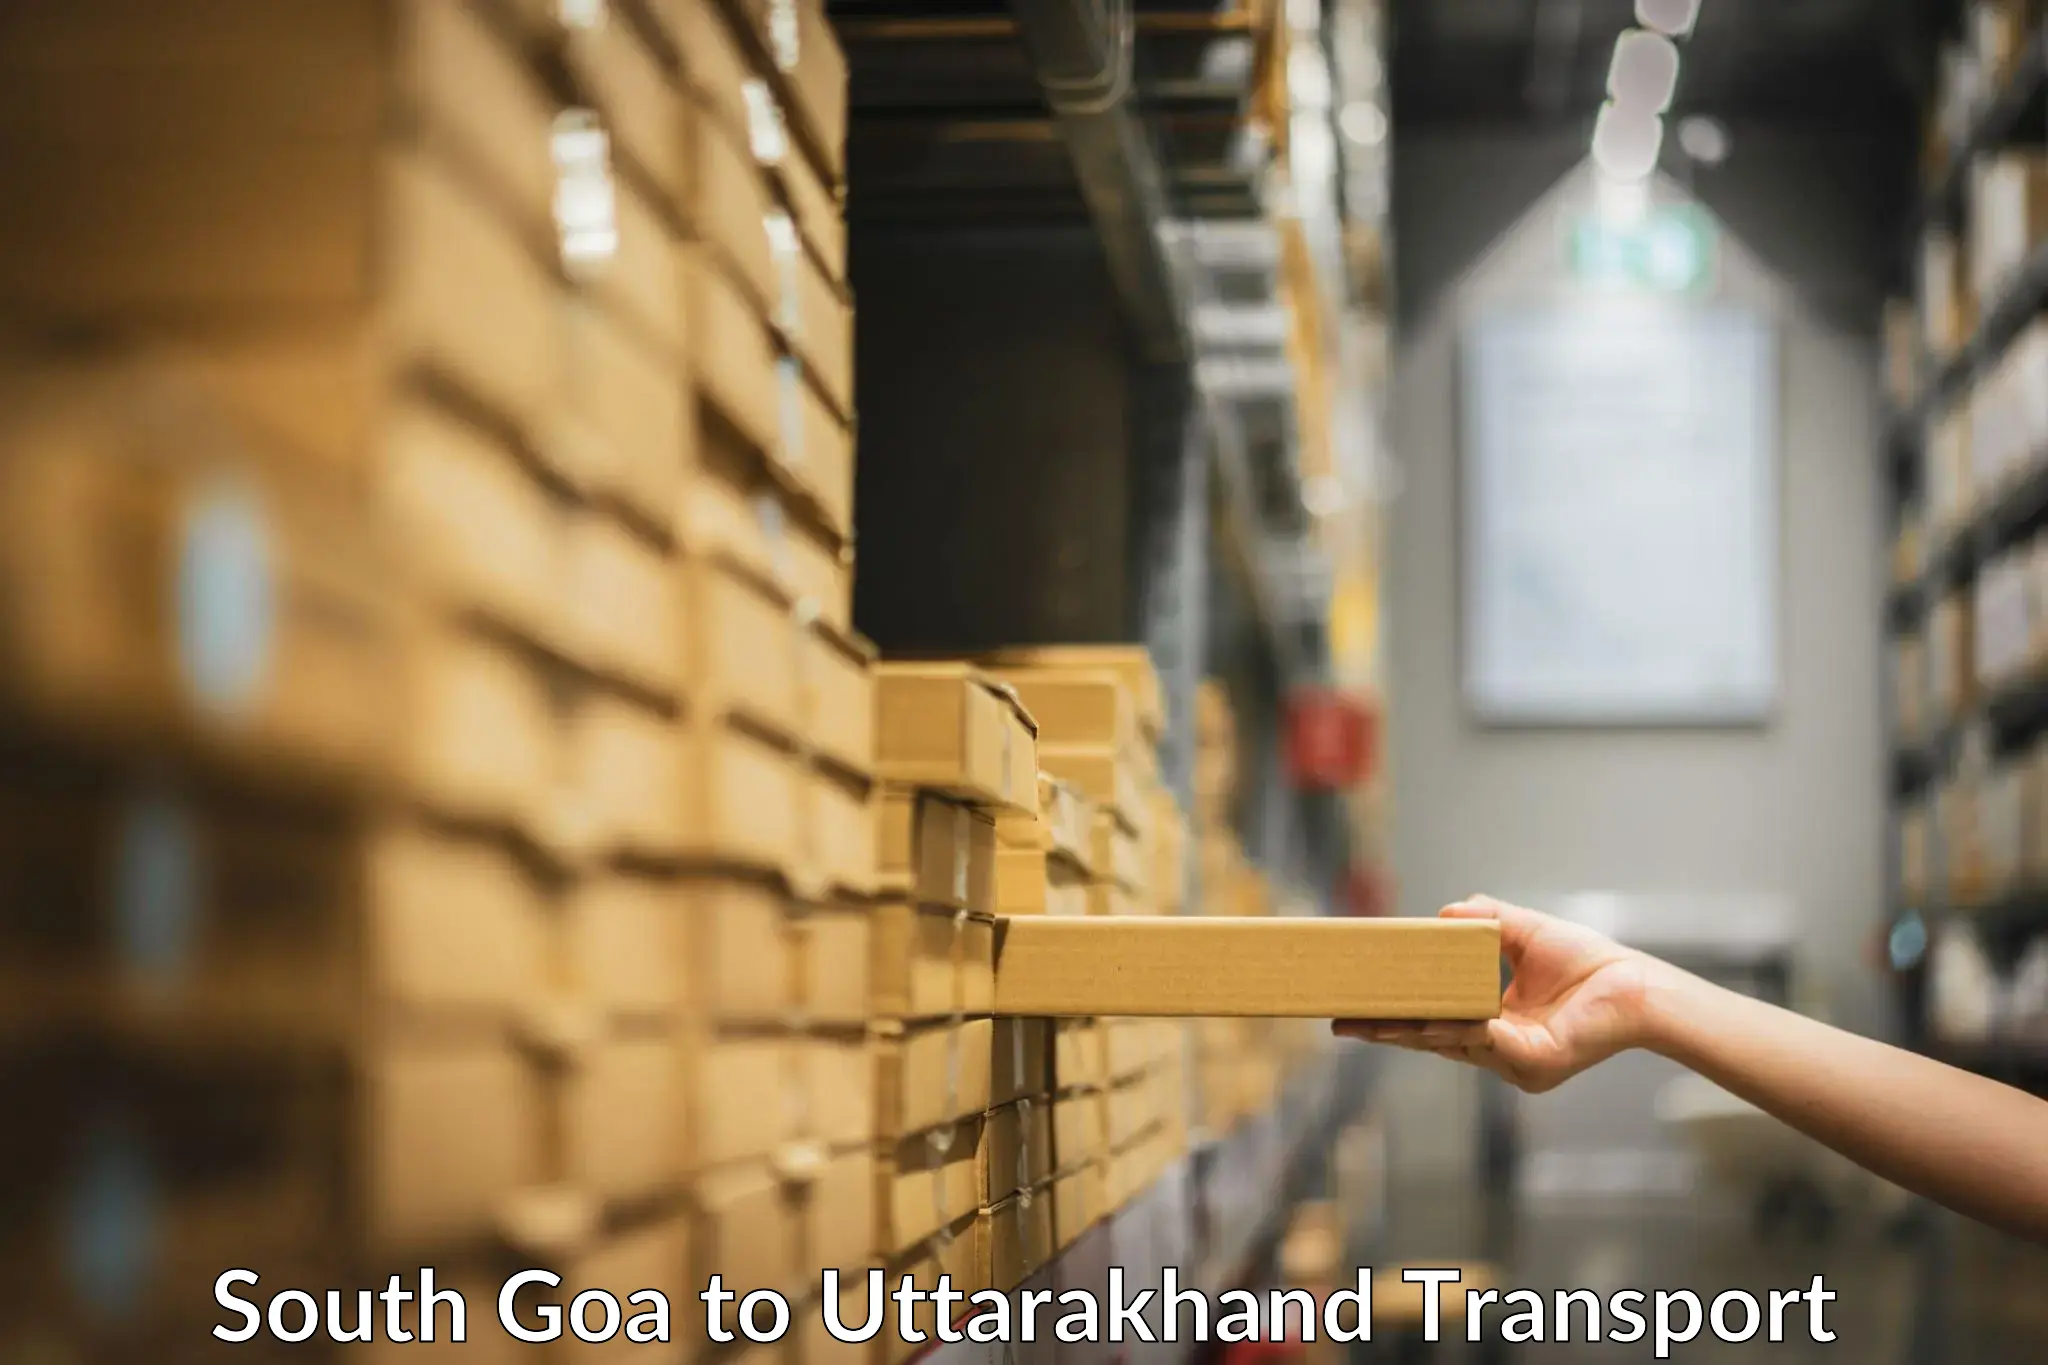 Transport in sharing South Goa to Uttarakhand